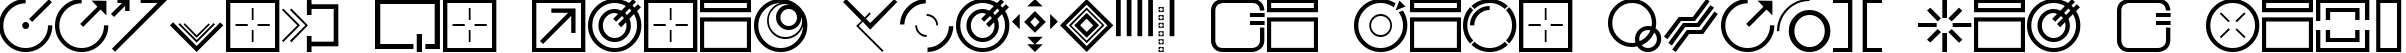 Пример написания шрифтом StyleBats CleanCut текста на французском